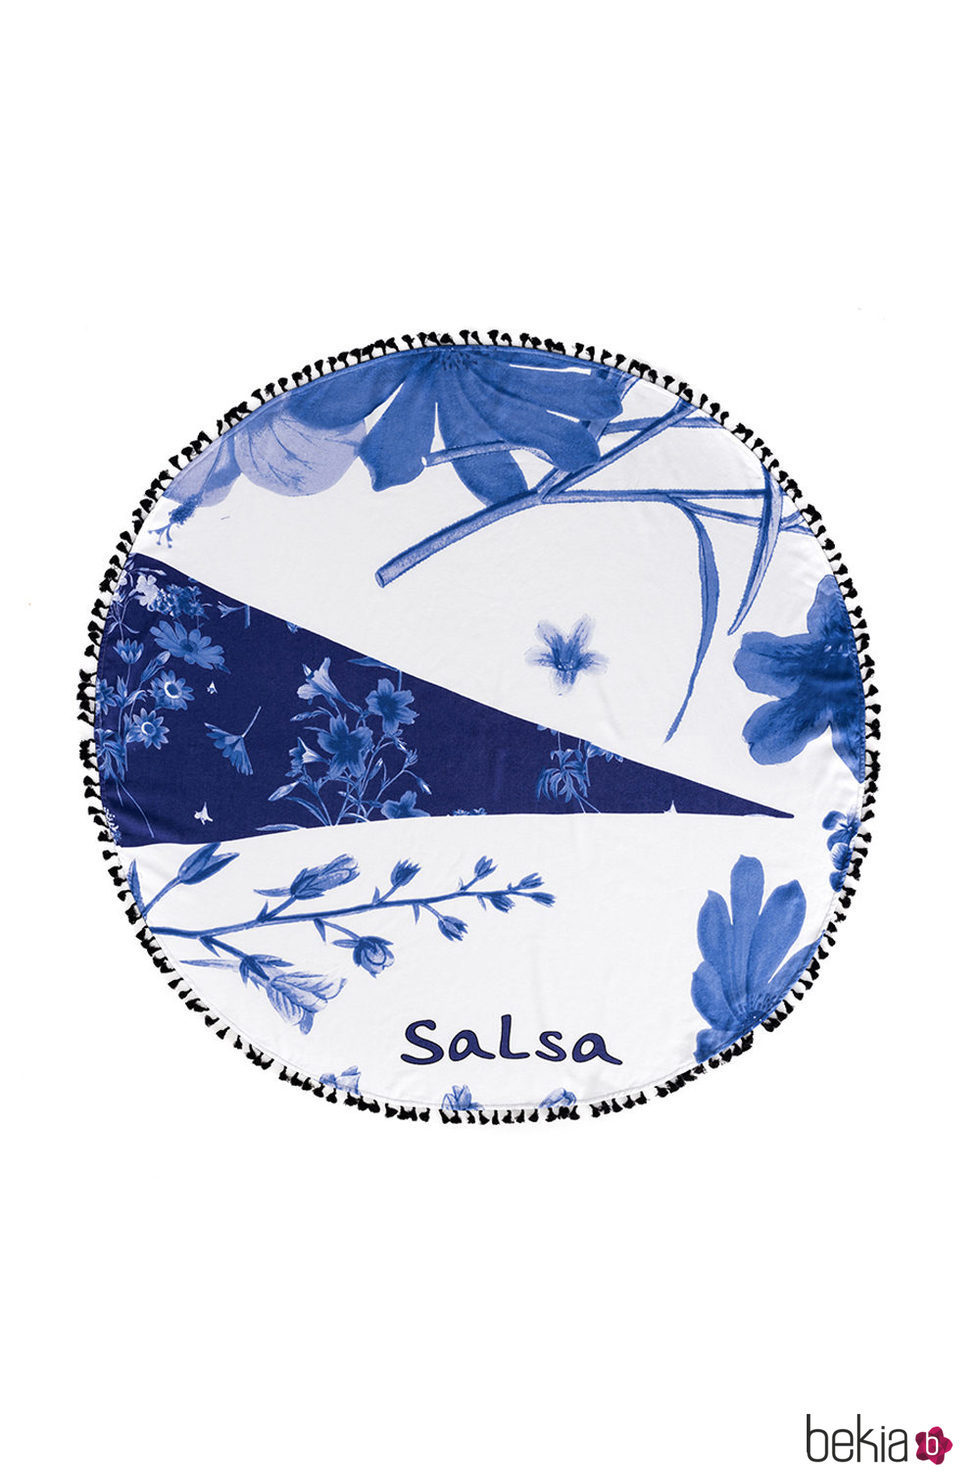 Toalla redonda de la colección de accesorios para la temporada de primavera/verano 2018 de Salsa.